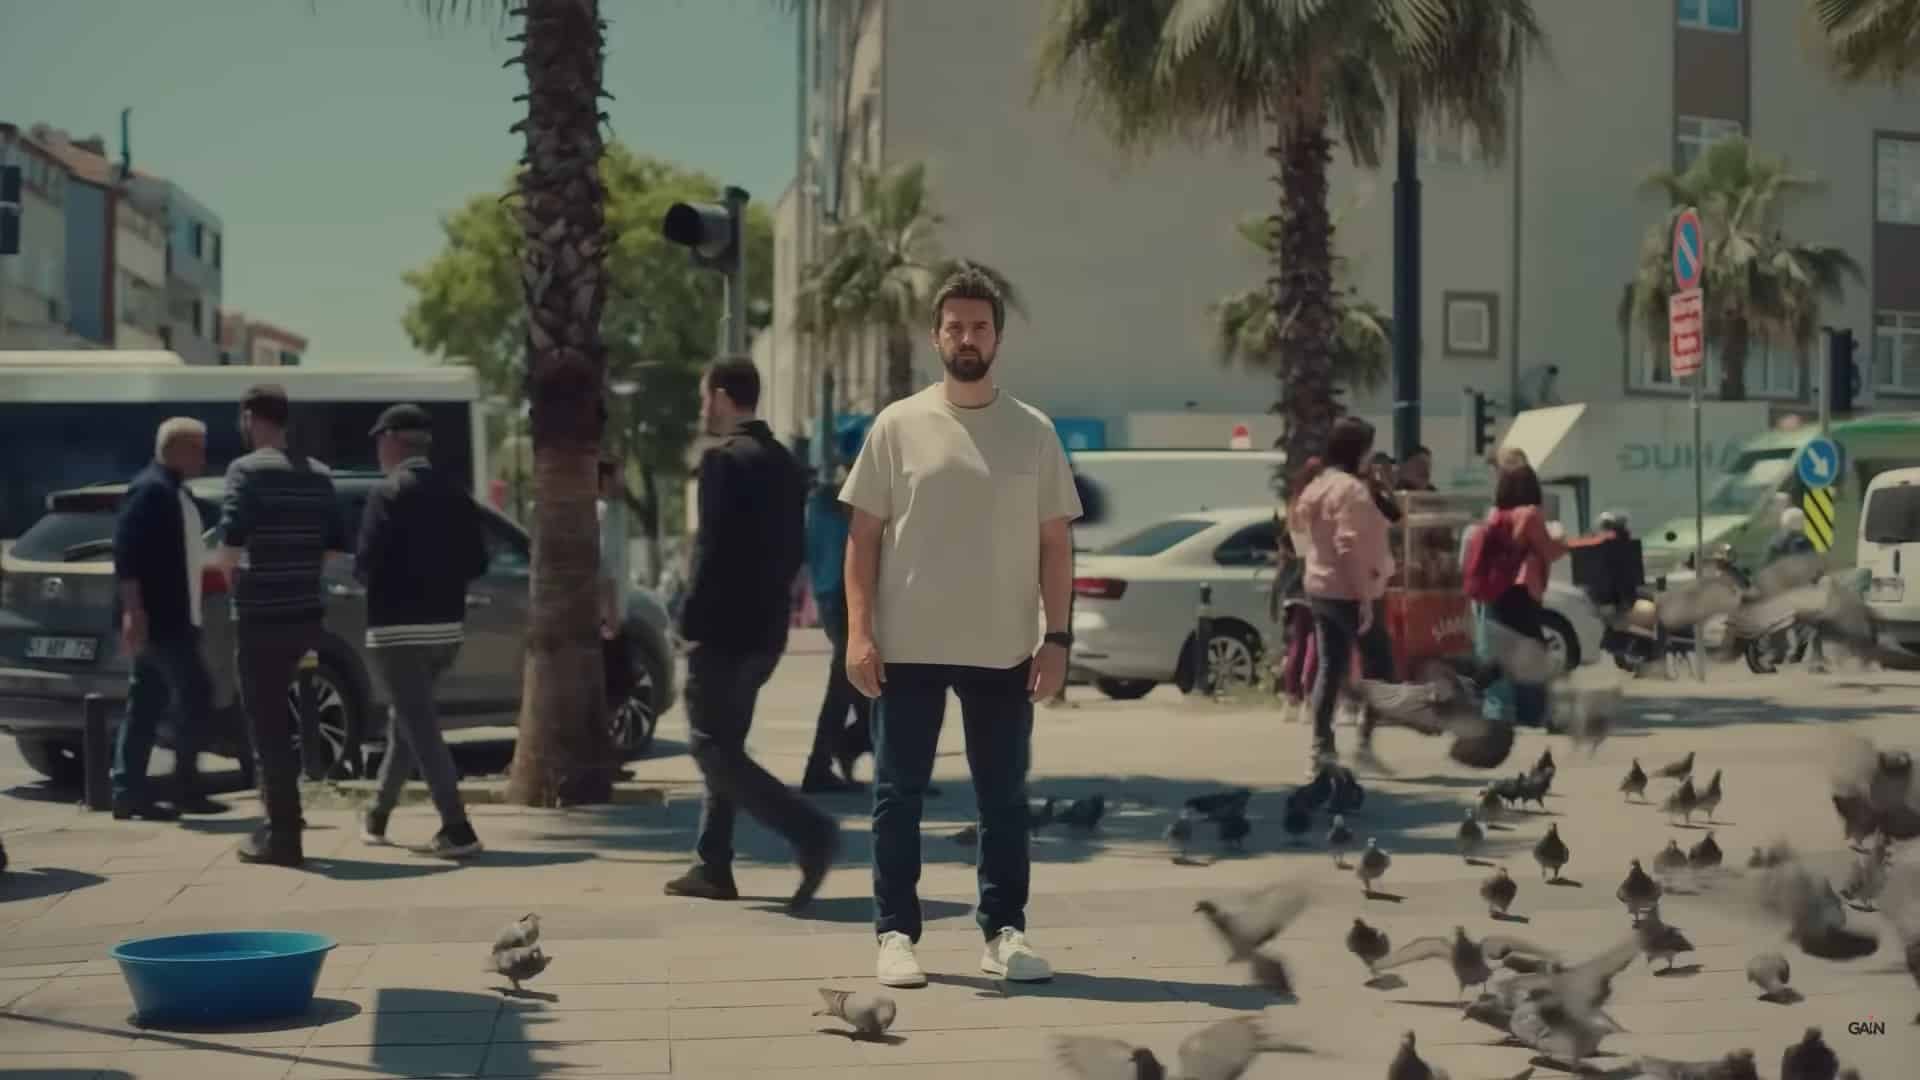 Dünya Bu: An isolated man amidst the hustle bustle of a city